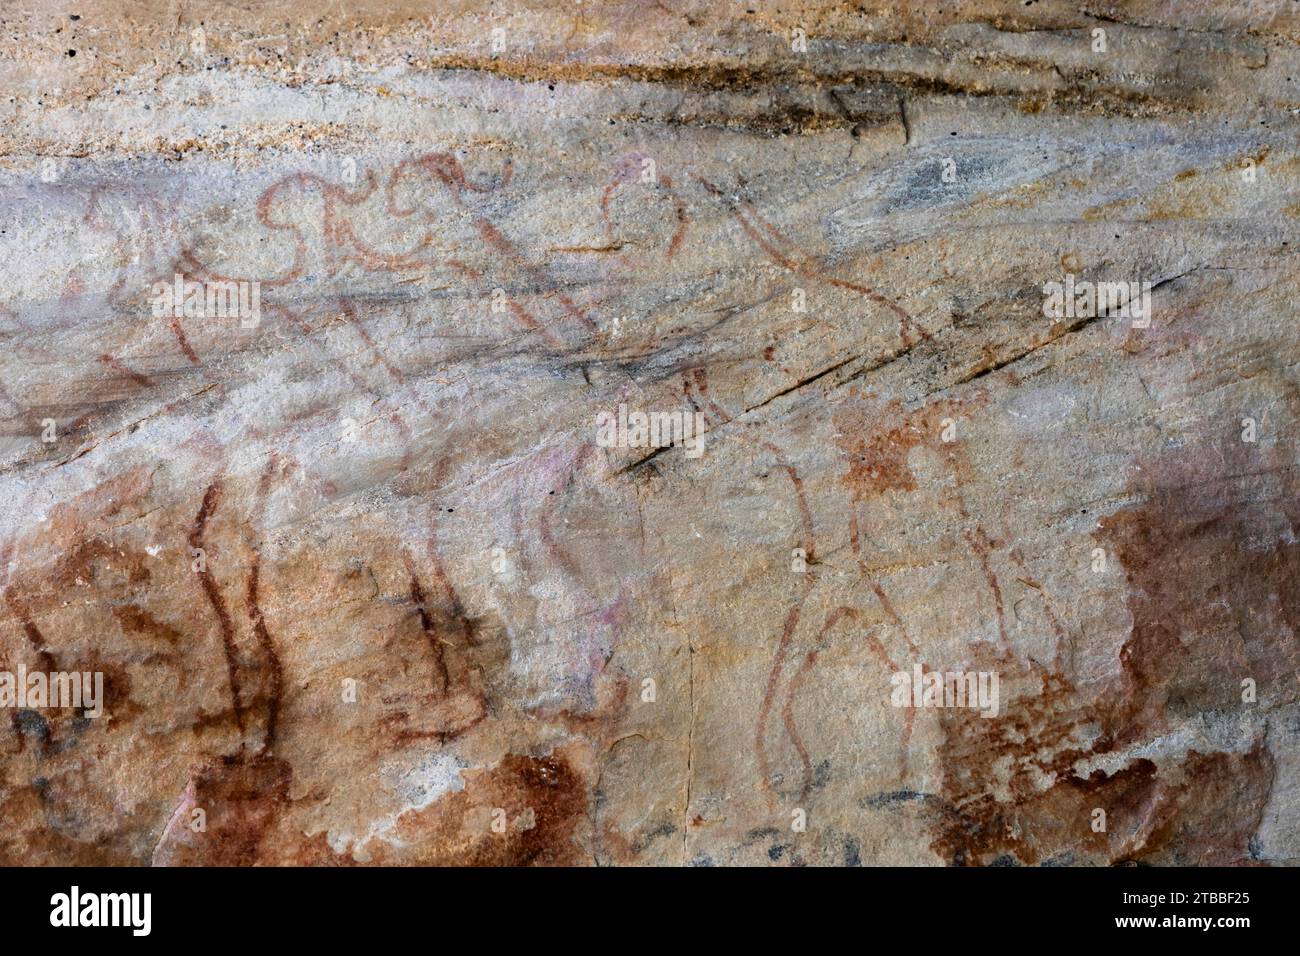 PHA Phak WAN, peintures rupestres préhistoriques à énorme rocher, district de Song Dao, Sakon Nakhon, Thaïlande, Asie du Sud-est, Asie Banque D'Images